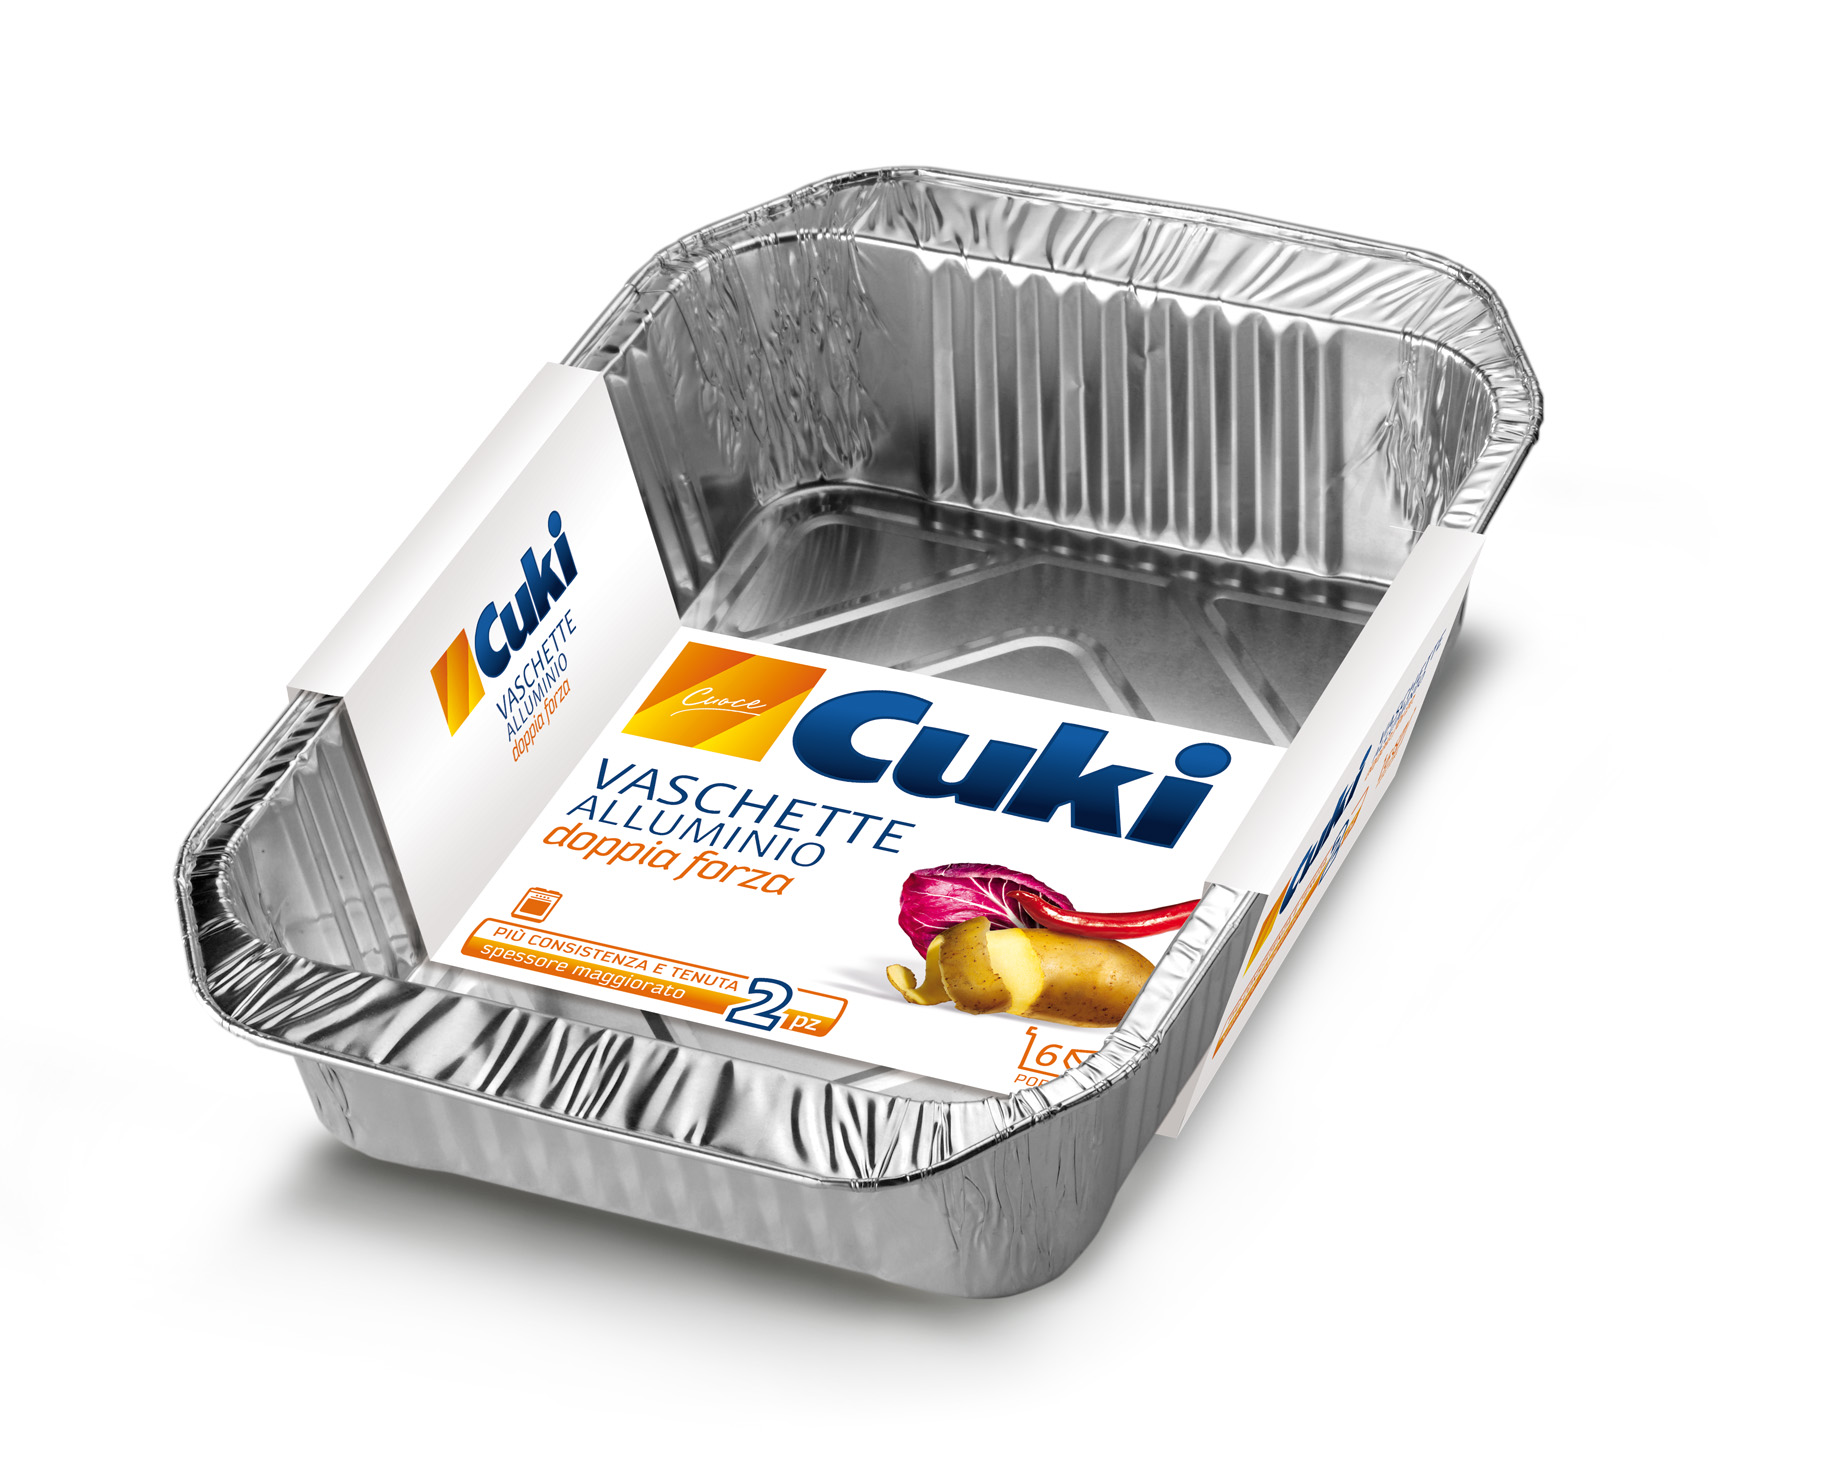 Cuki Conserva e Cuoce Vaschette Alluminio con coperchi 4porzioni - 3 pz  (R75)